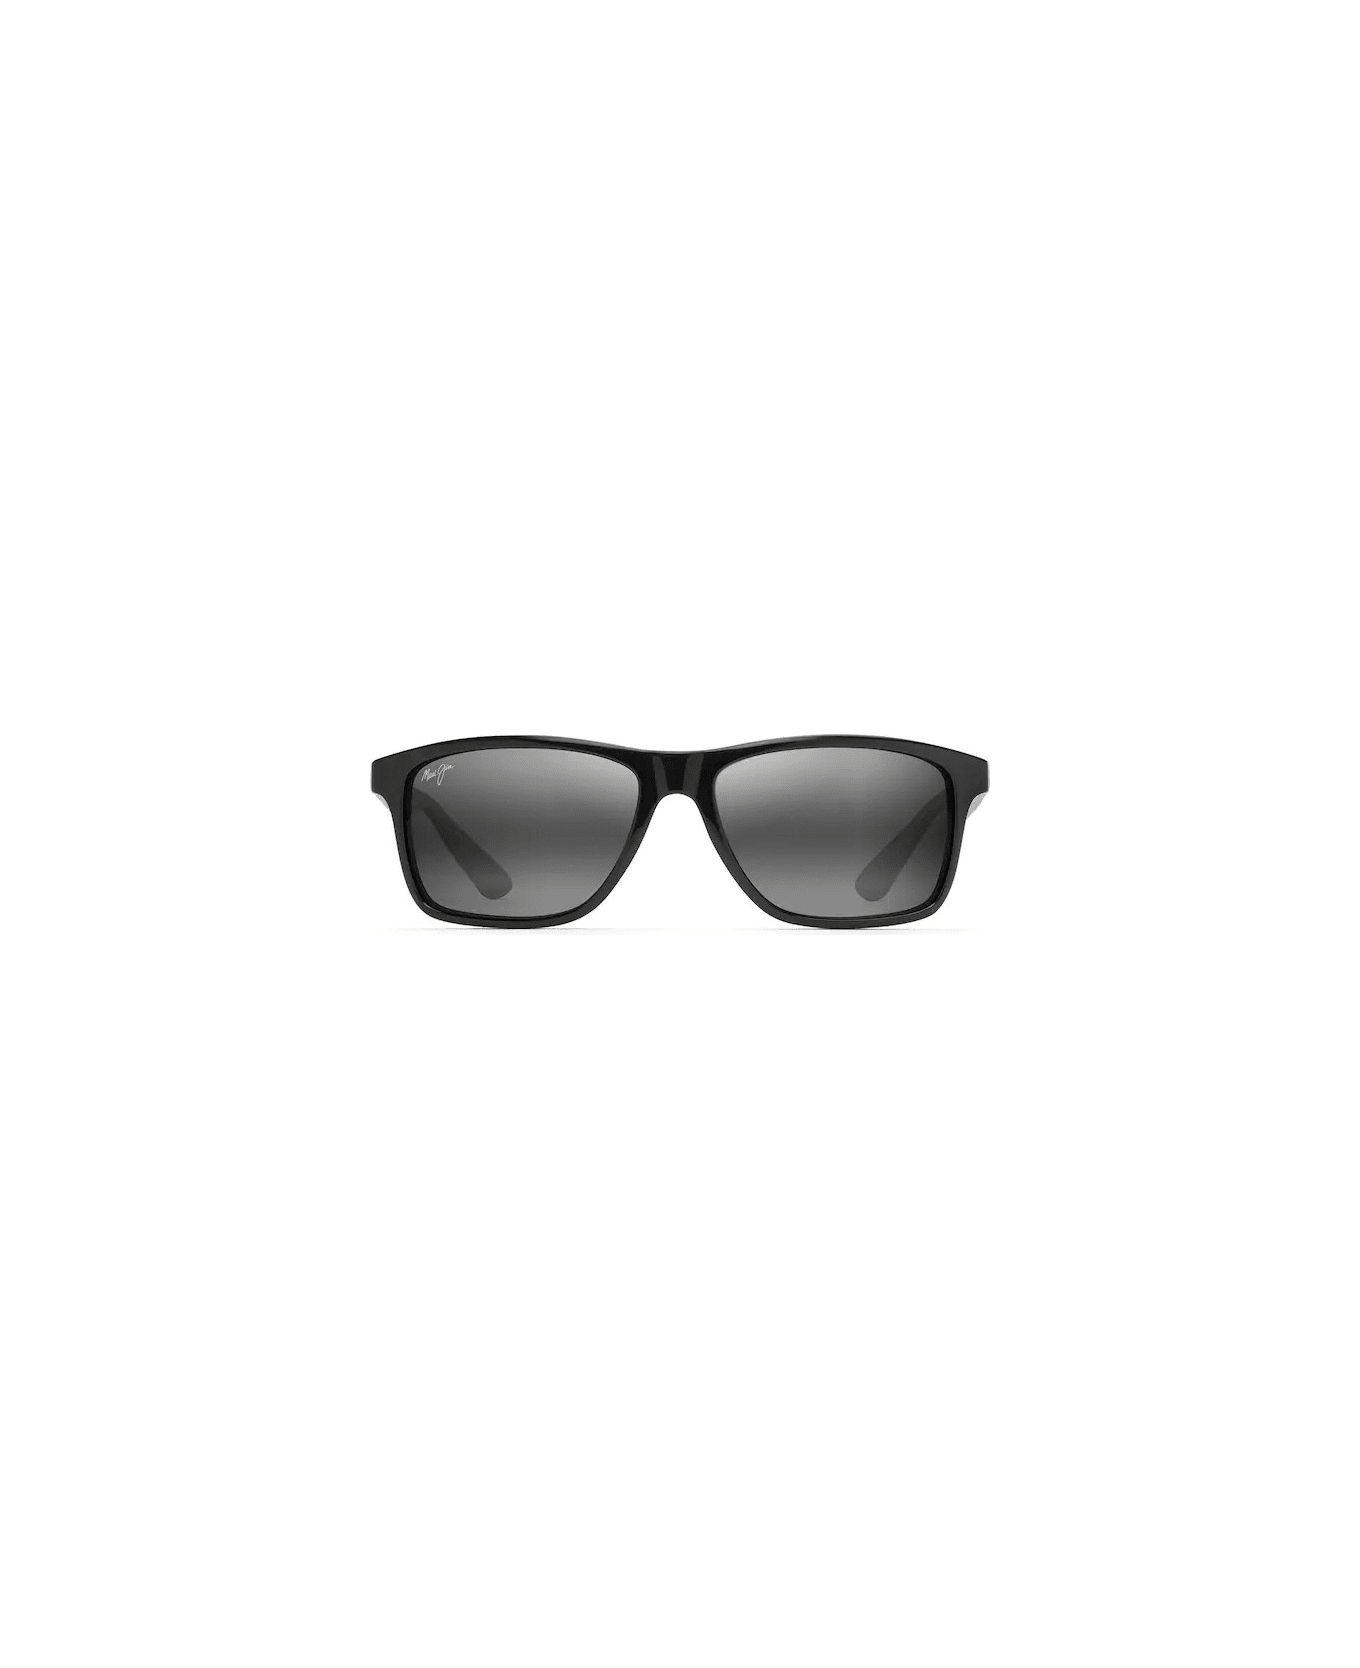 Maui Jim MJ798-02 Sunglasses - Nero